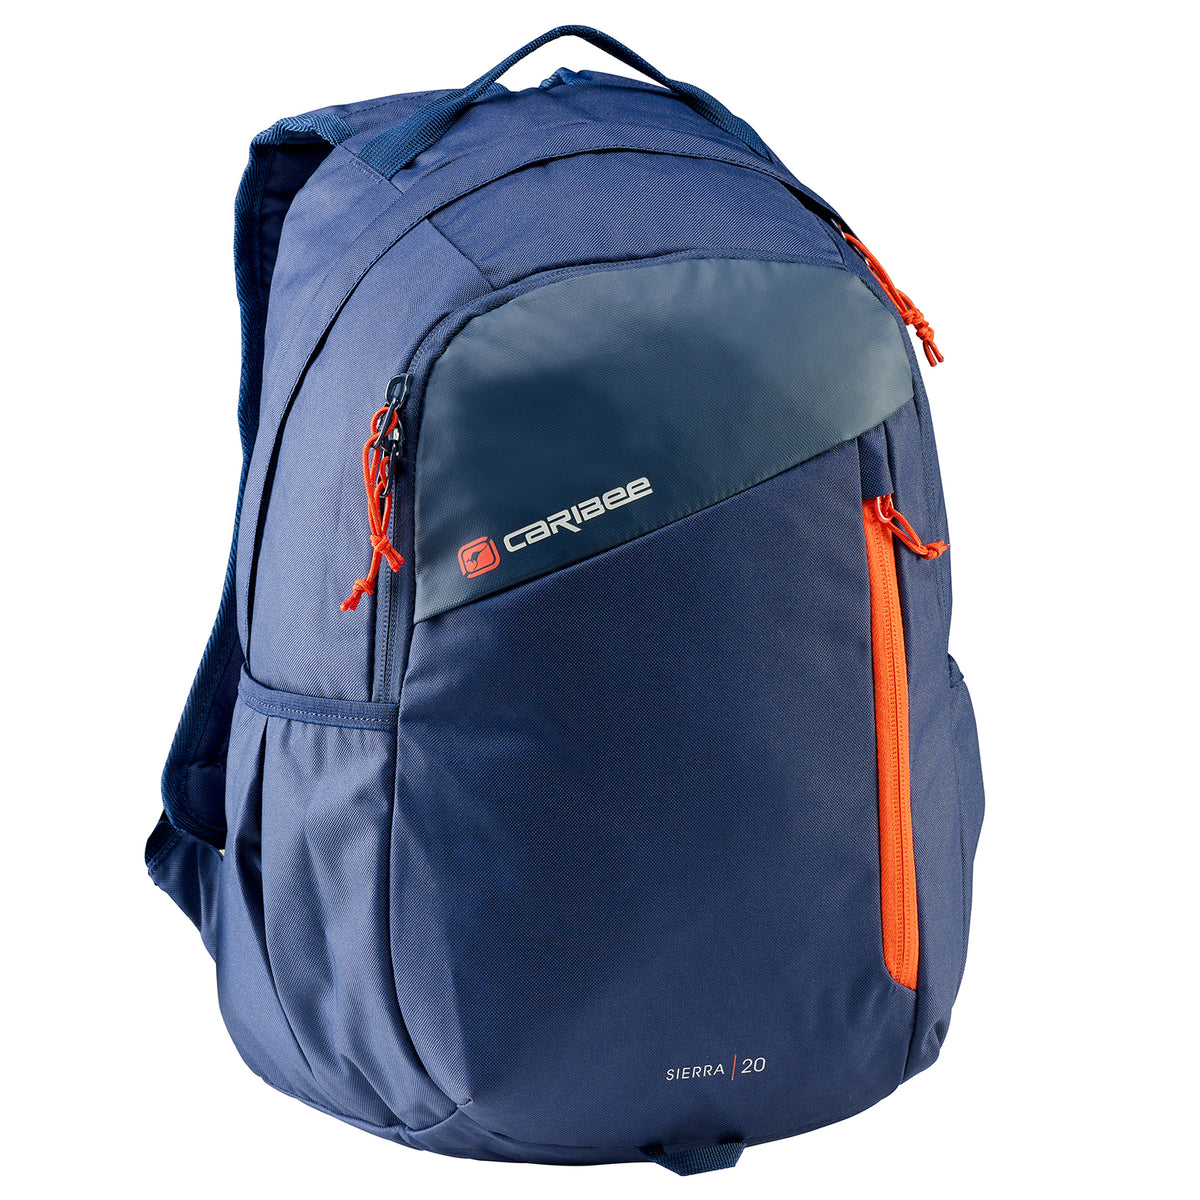 Caribee - Sierra 20lt Sports backpack - Navy/Red-1